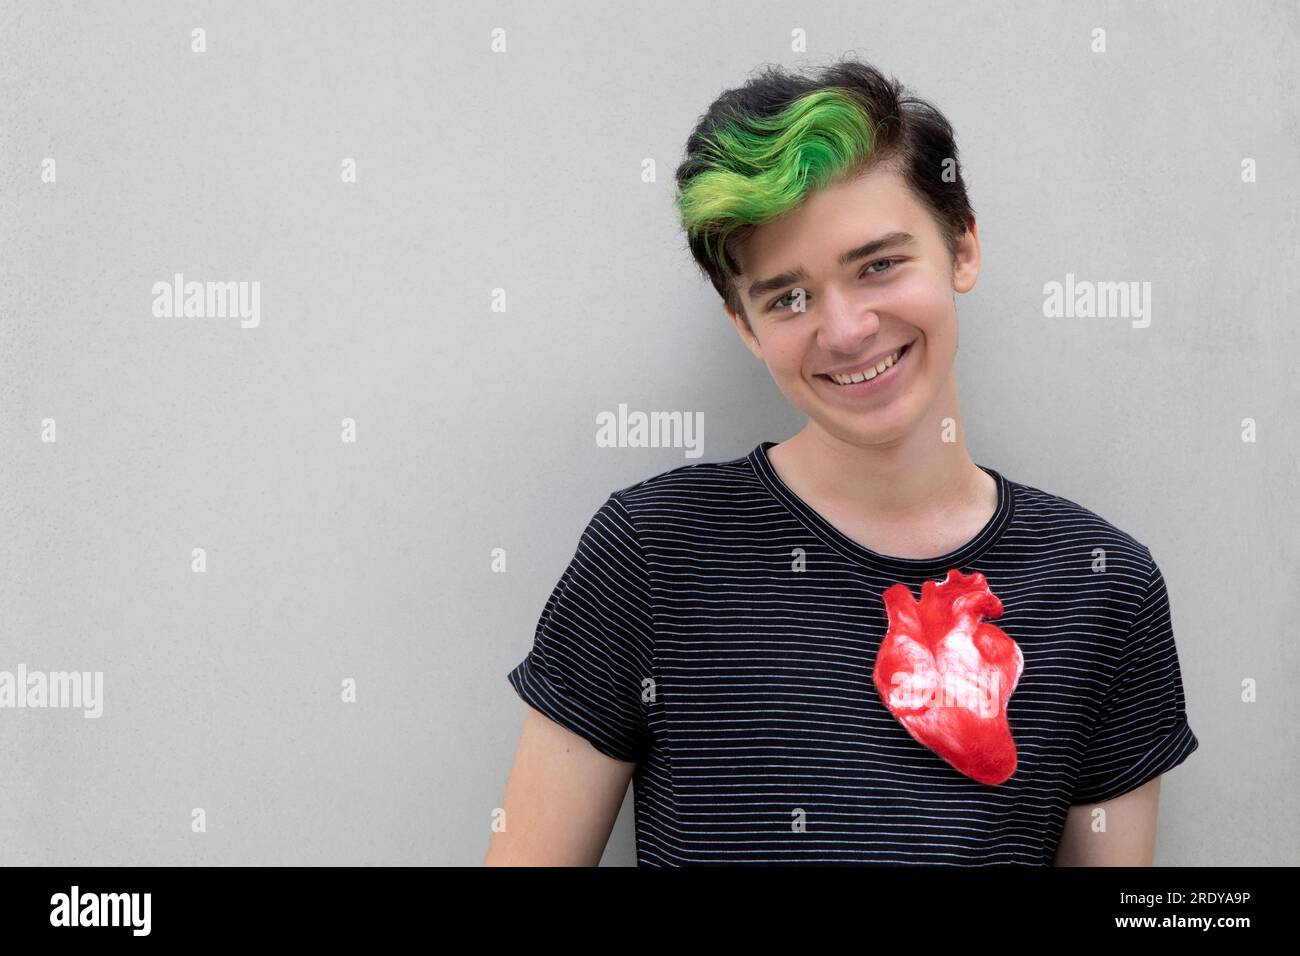 Lächelnder Teenager mit gefärbtem grünen Haar und künstlichem Herz vor grauem Hintergrund Stockfoto